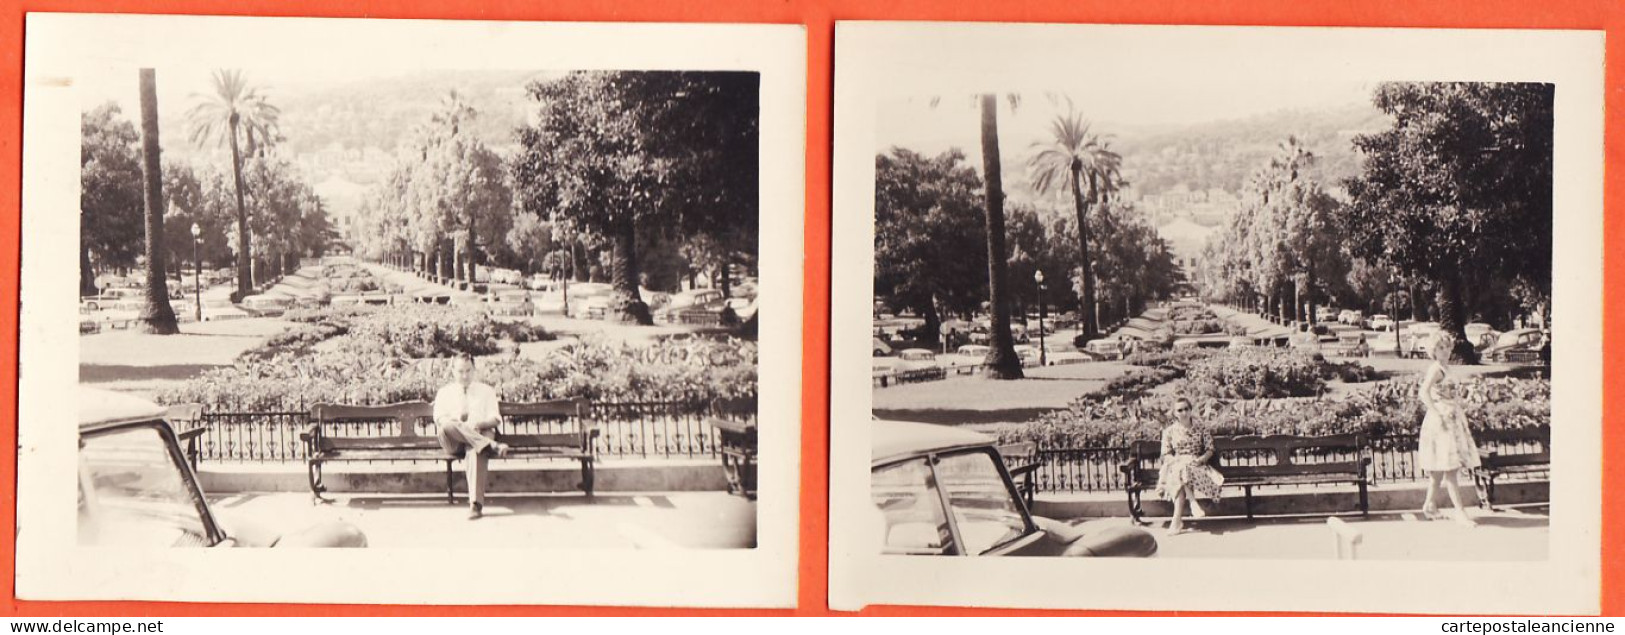 27274 /⭐ ◉ 2 Photo  ◉ MONTE-CARLO Monaco Allée Palmiers Jardin BOULINGRINS Fond Casino 1950s  ◉ Photographies 13x9cm - Jardin Exotique